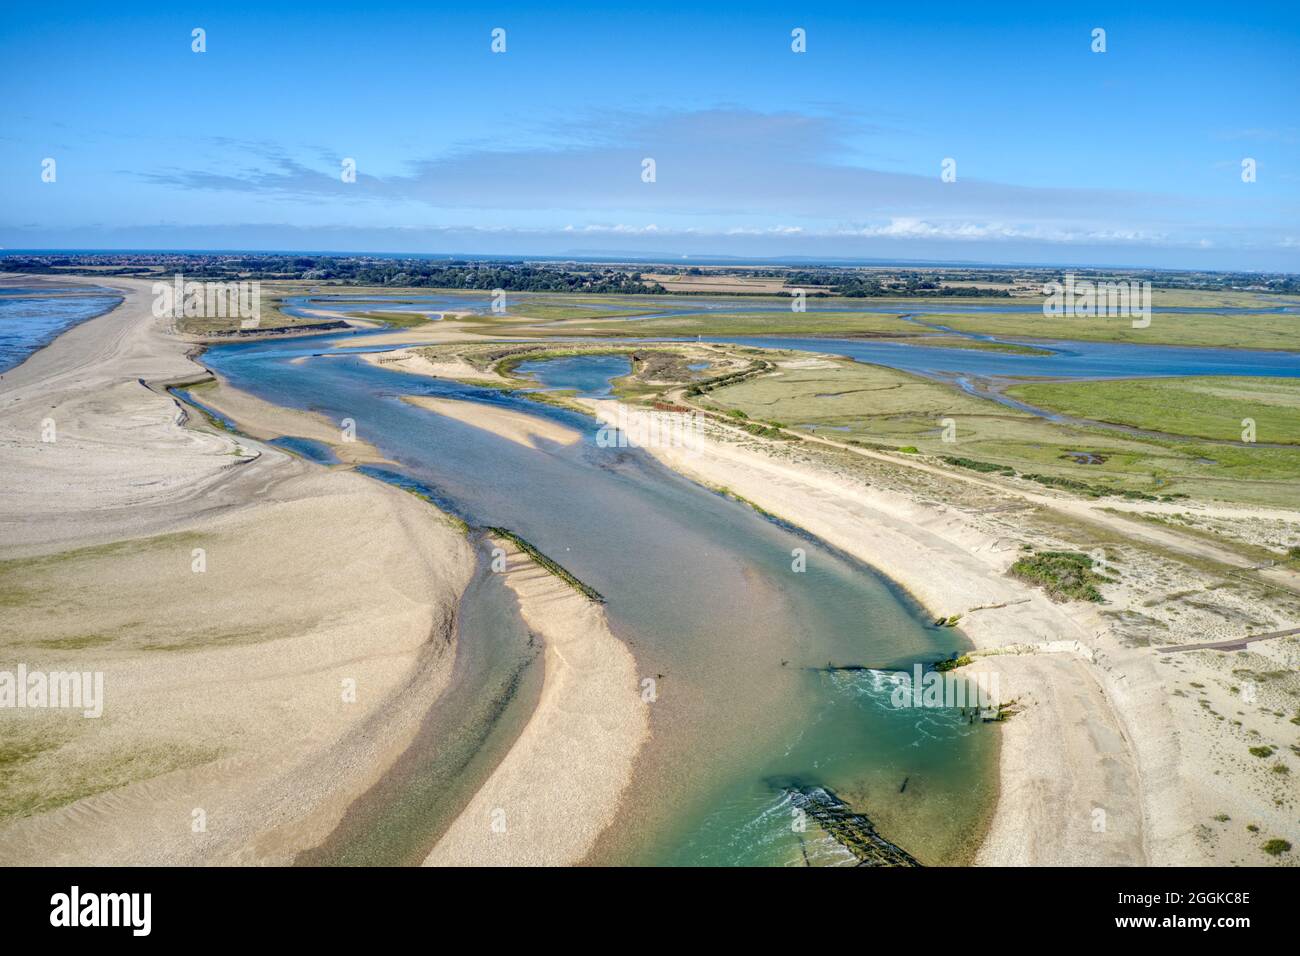 Entrée de la crache du port de Pagham à marée basse photo aérienne avec la réserve naturelle en vue dans ce havre pour la faune. Banque D'Images